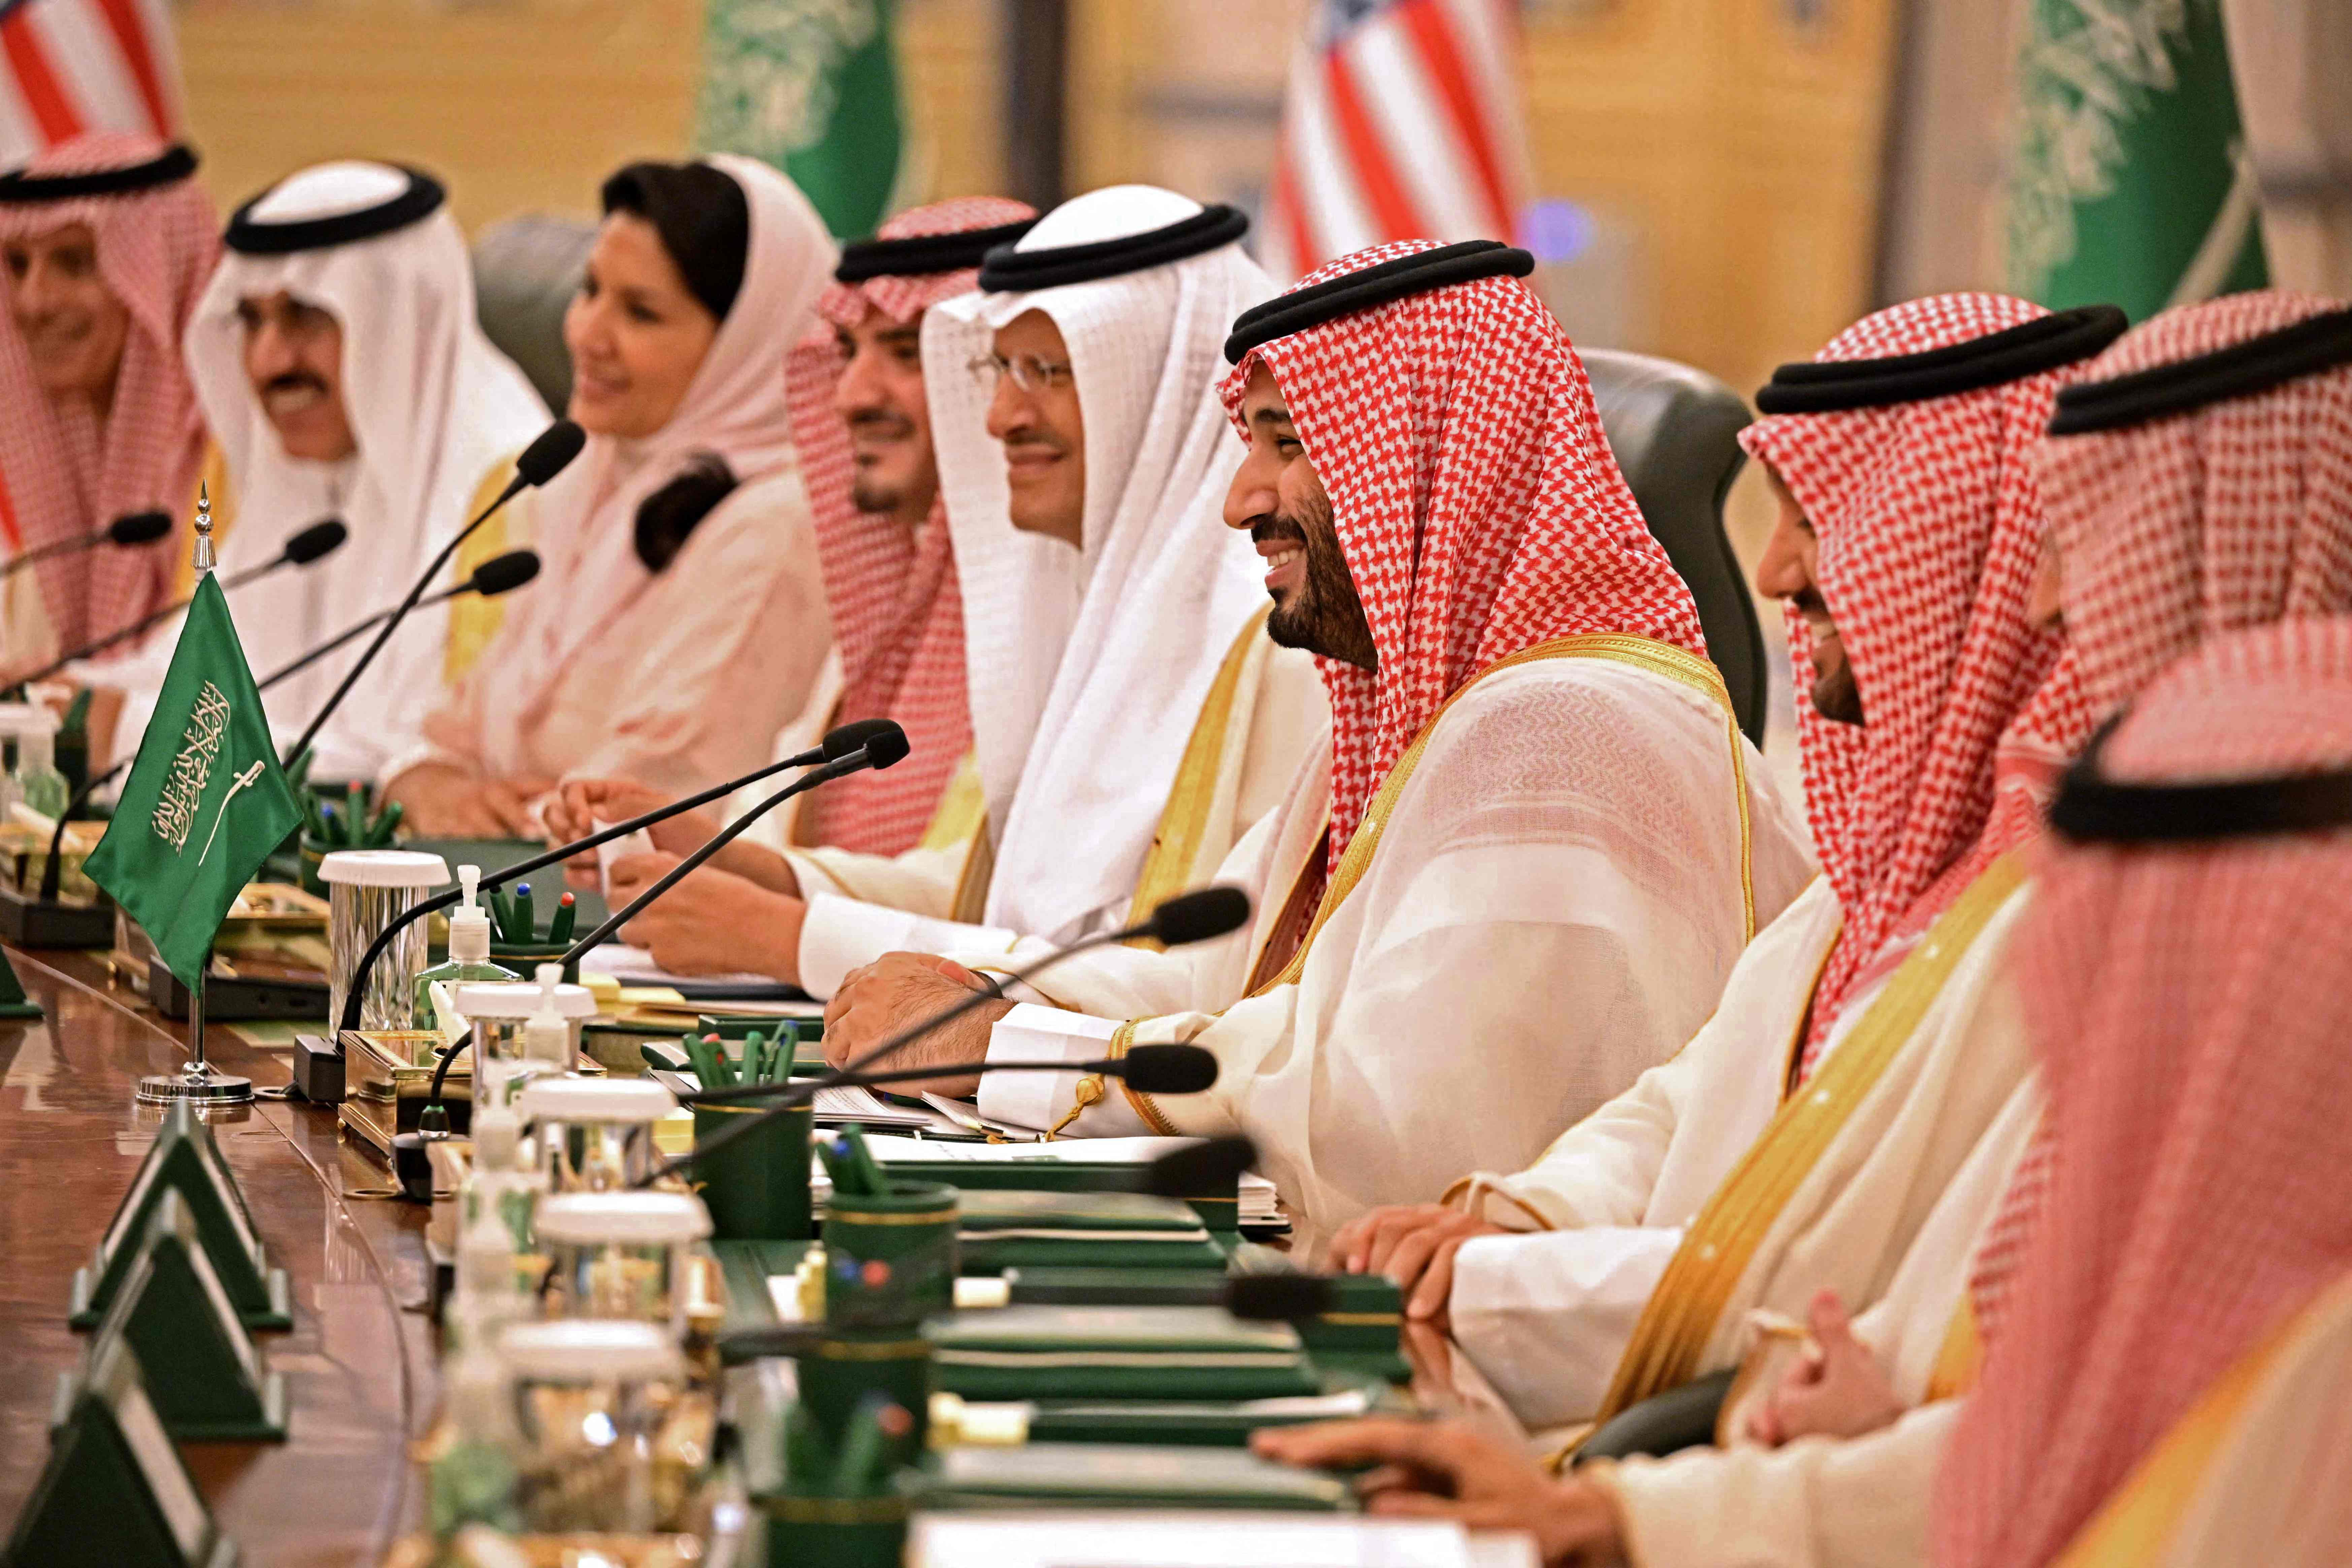 바이든의 사우디 순방 당시, ‘사우디는 아직도 왕따입니까?’라는 기자 질문에 바이든은 답을 않았고, 빈 살만 왕세자는 피식 웃었다.